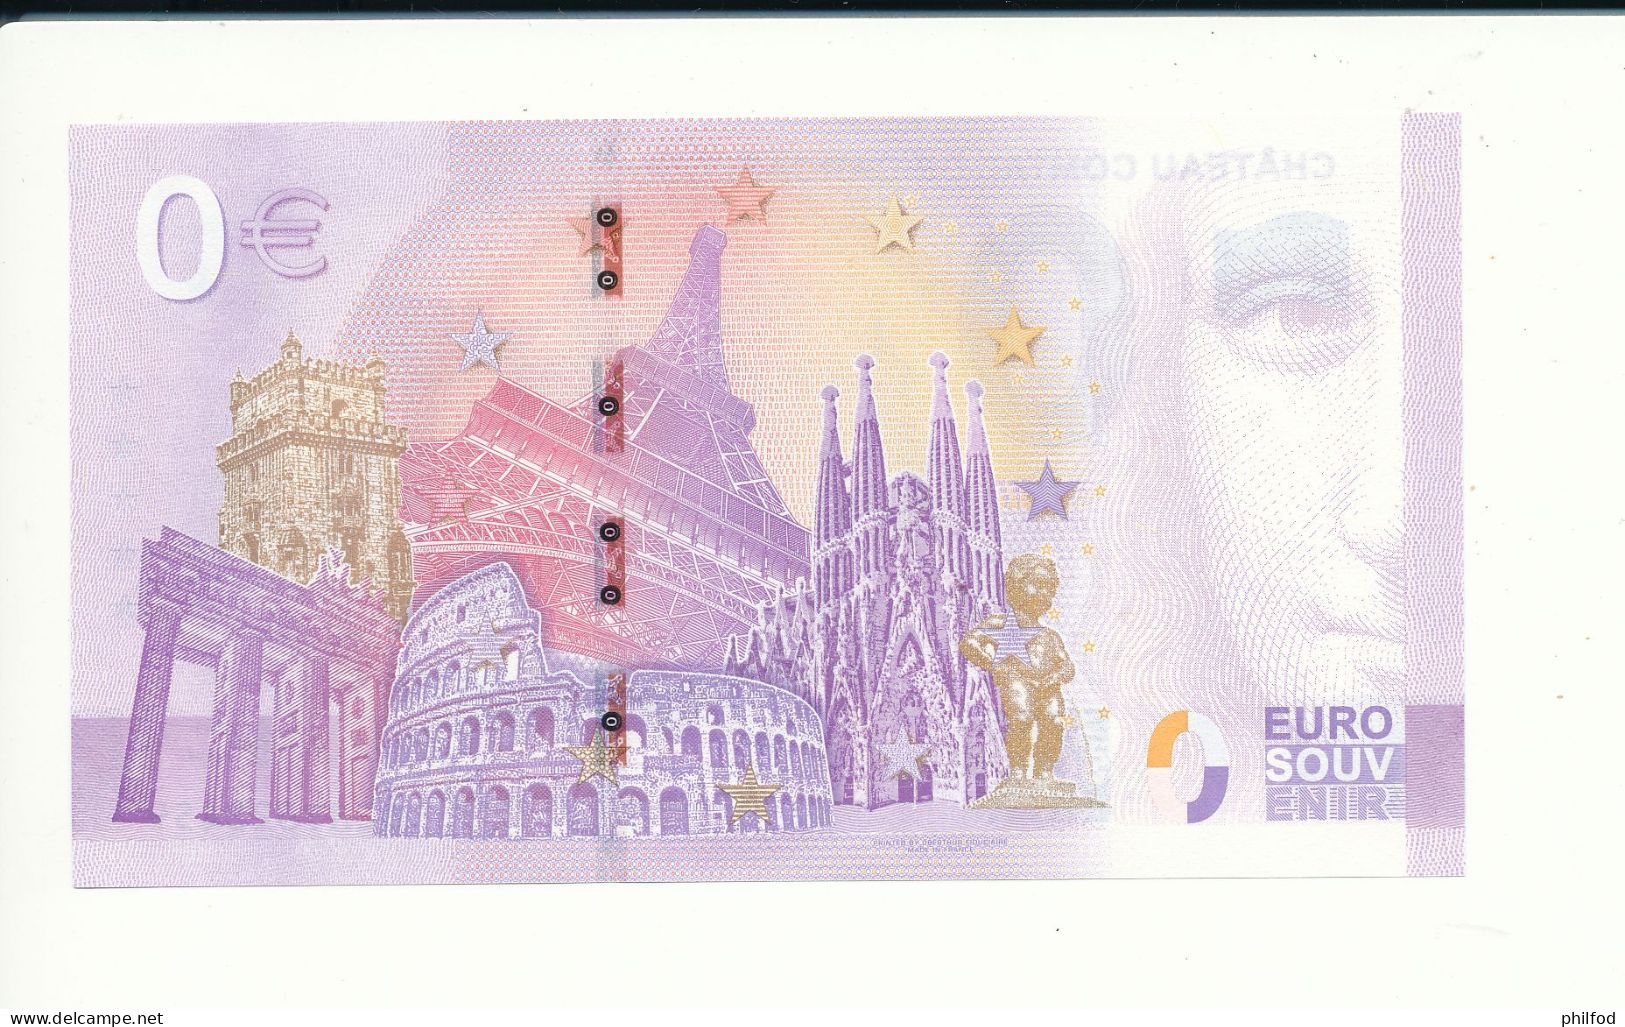 Billet Souvenir - 0 Euro - CHÂTEAU COMTAL DE CARCASSONNE - UEHY - 2023-1 - N° 28459 - Vrac - Billets